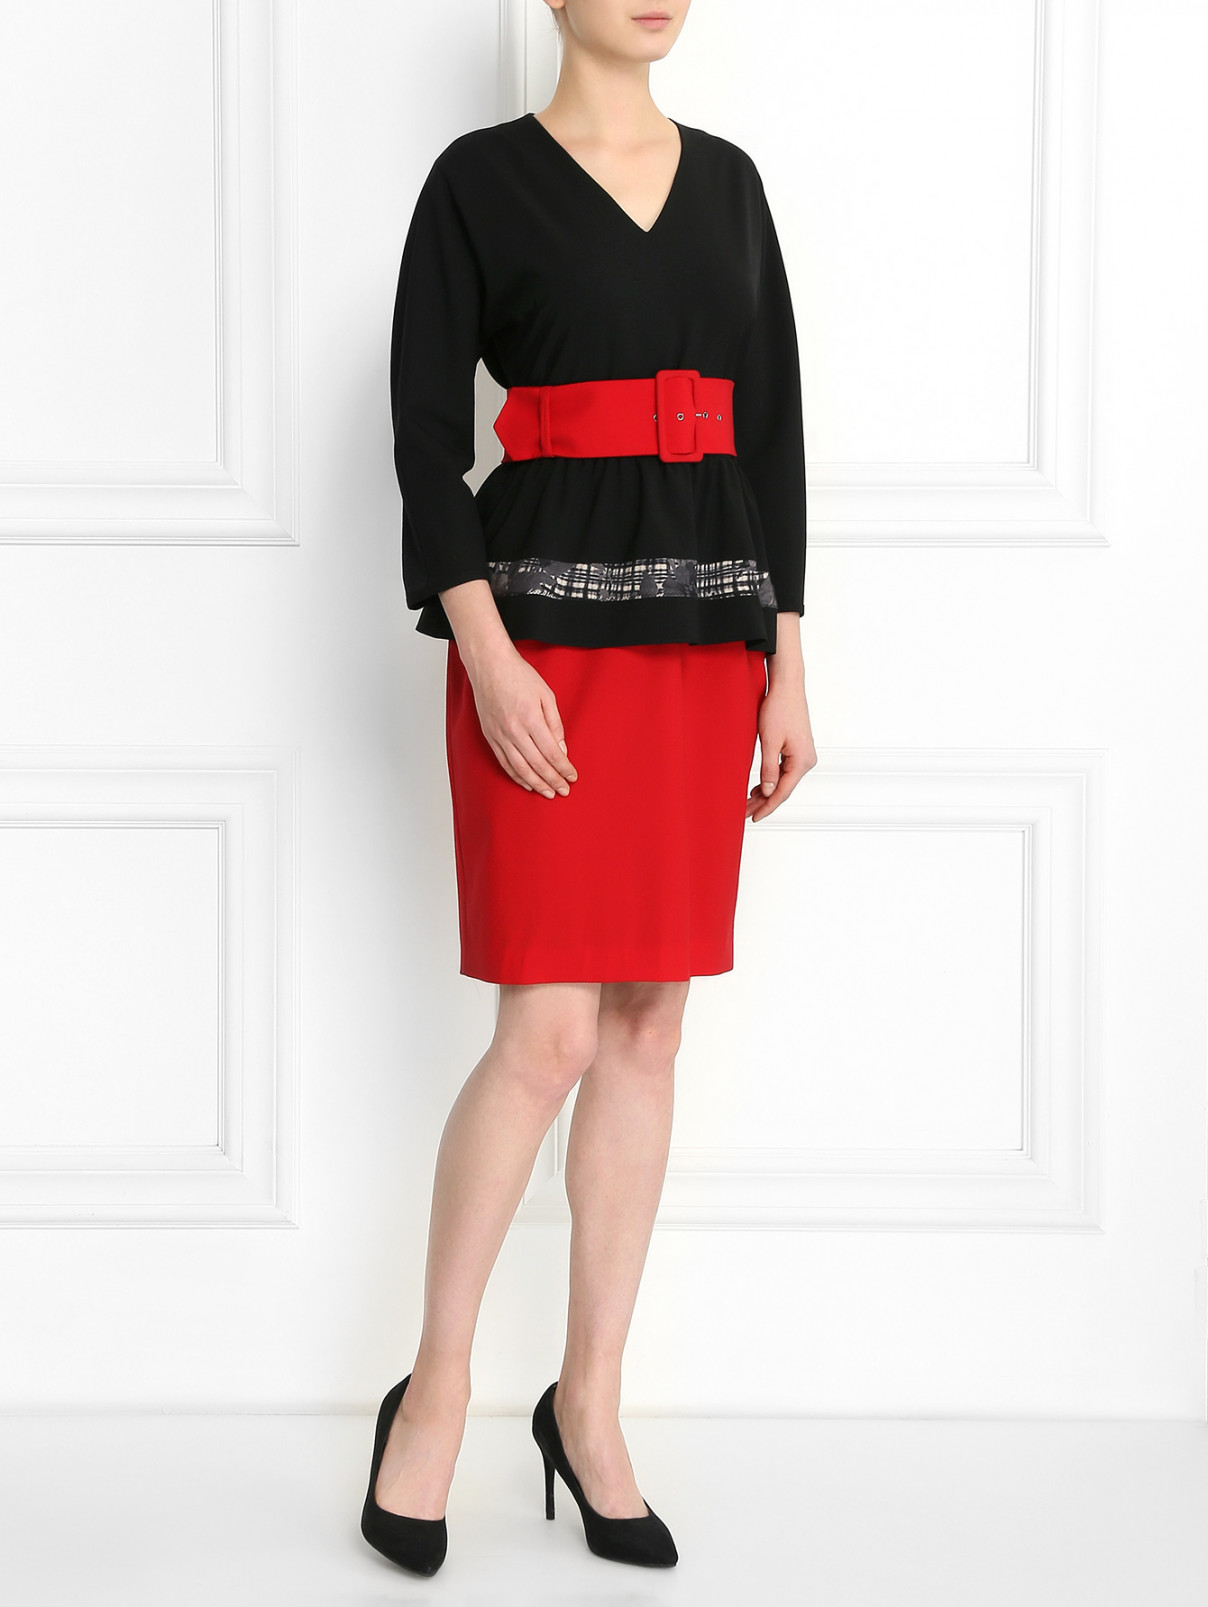 Платье из шерсти с контрастным поясом Antonio Marras  –  Модель Общий вид  – Цвет:  Черный